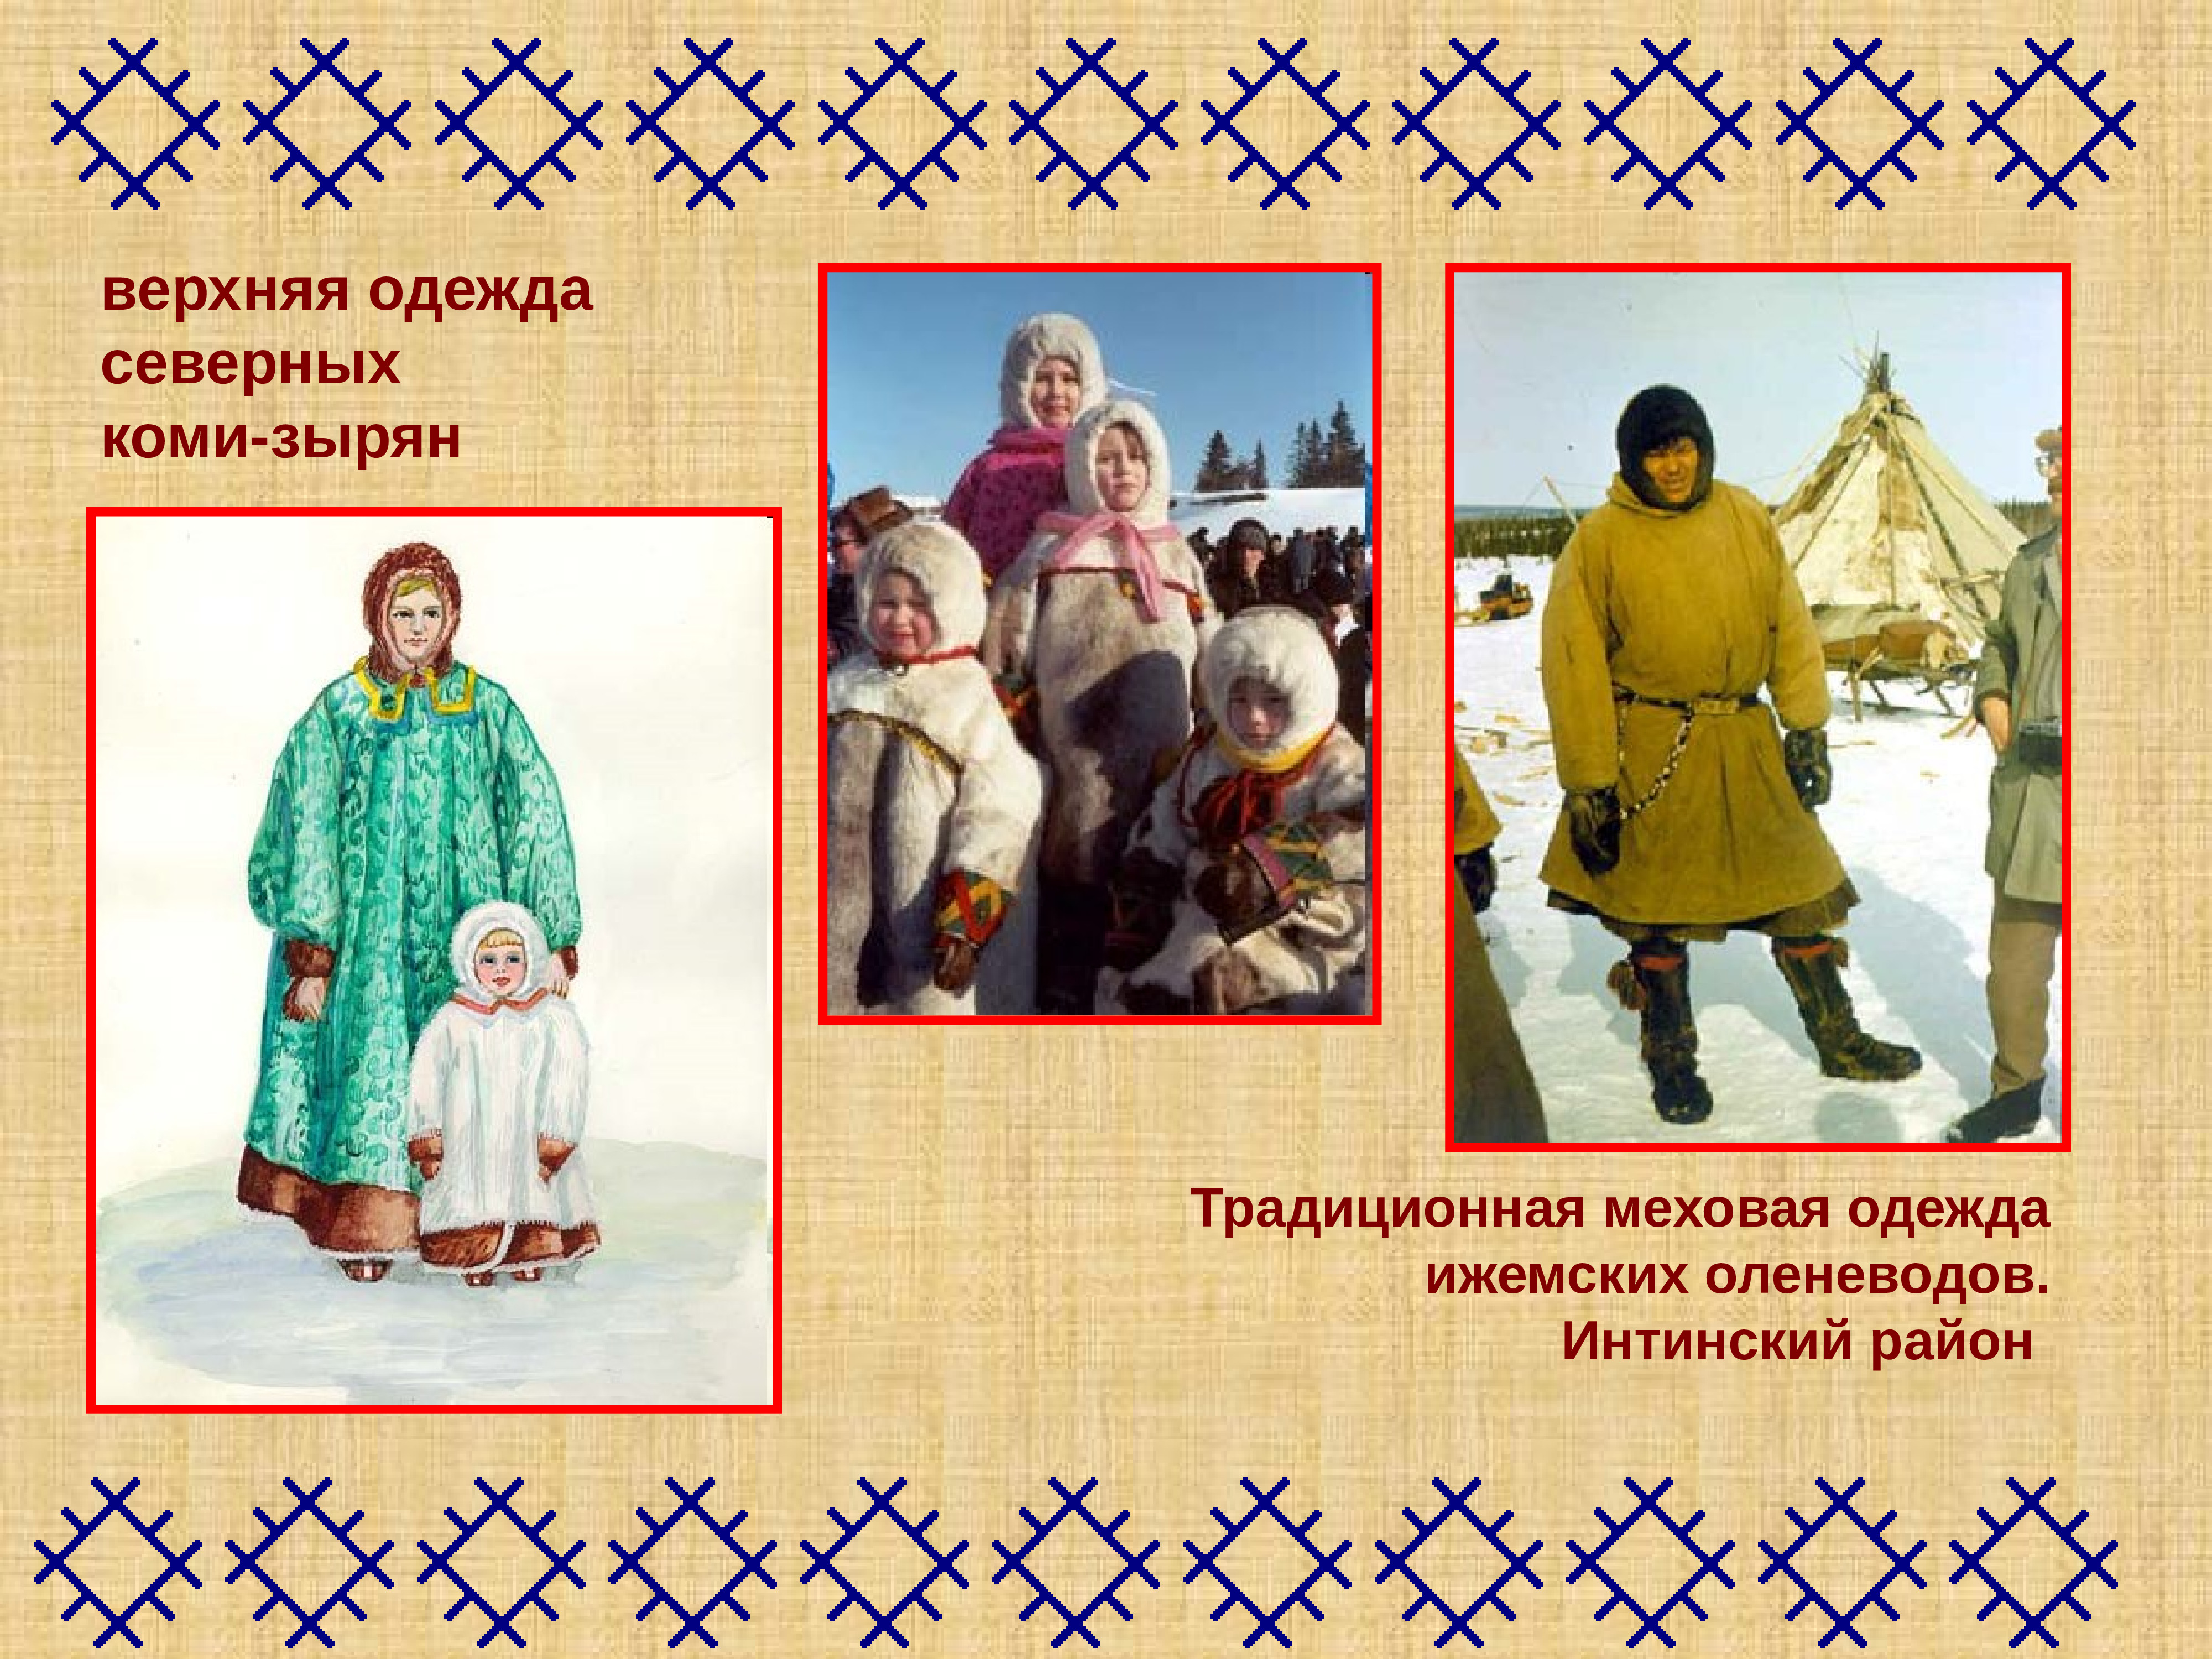 Мужской национальный костюм Коми ижемца